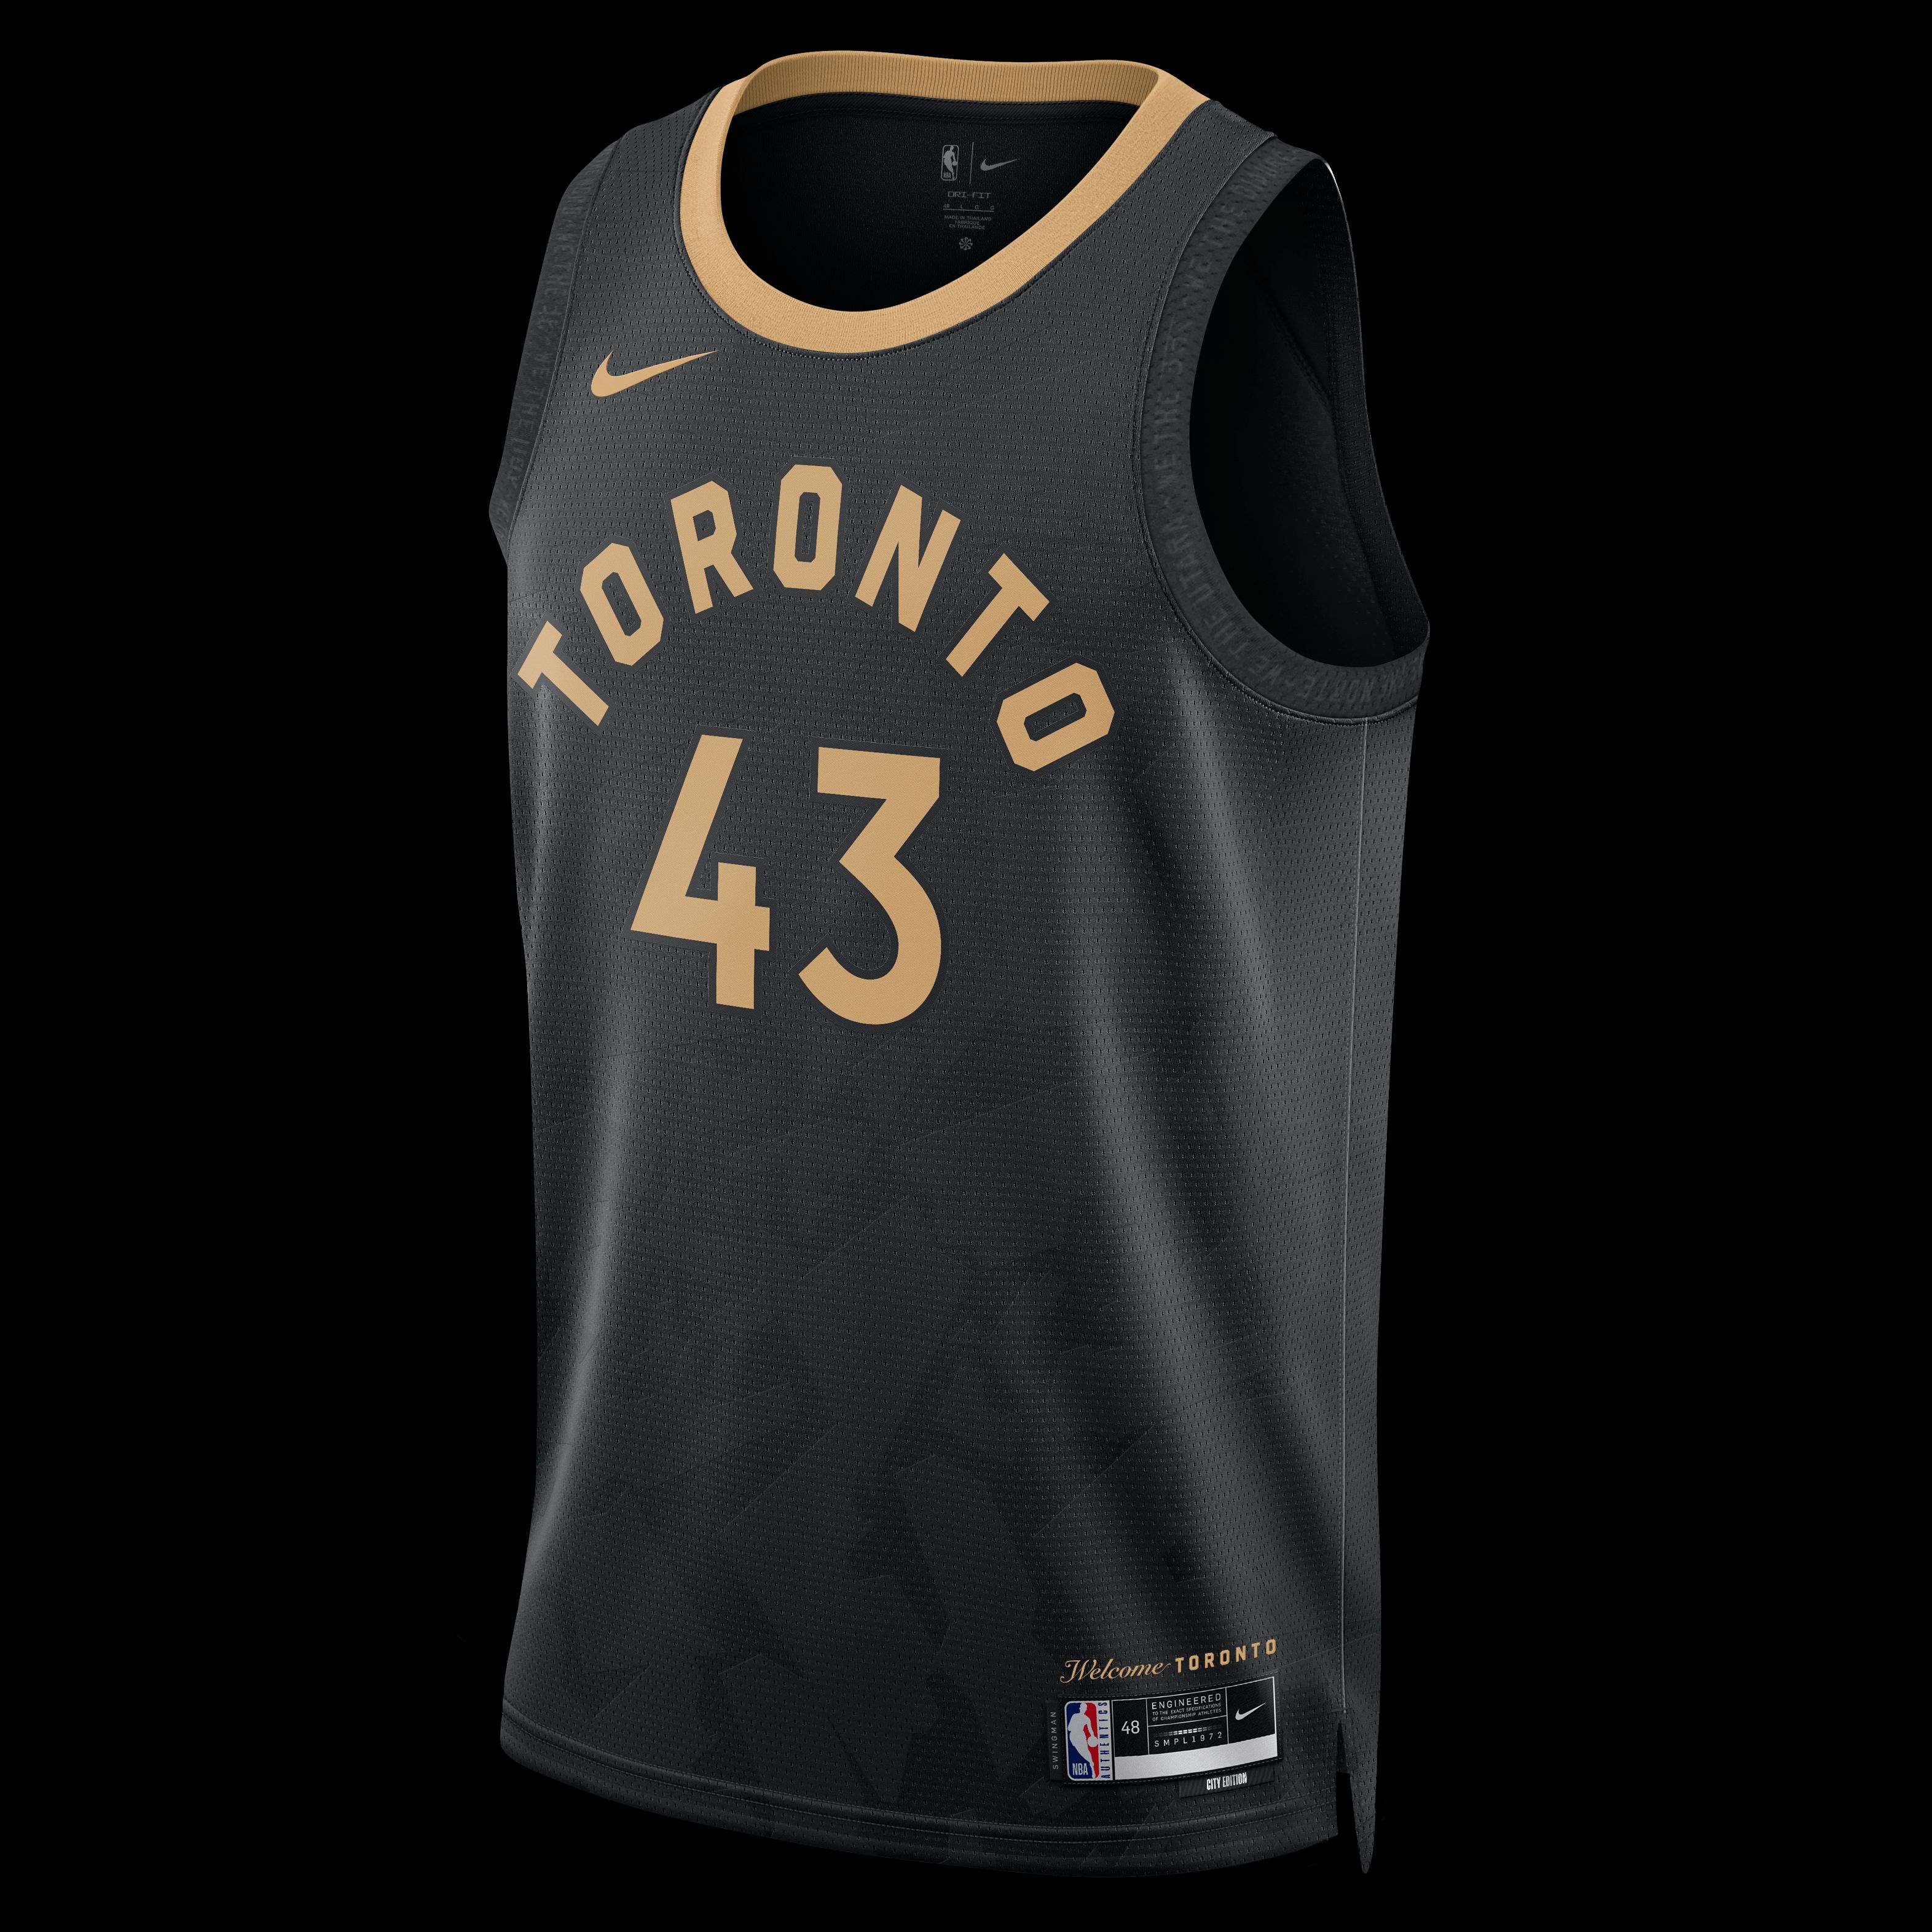 NBA Italia - Rep The North! Acquista la City Edition jersey dei Toronto  Raptors! >>